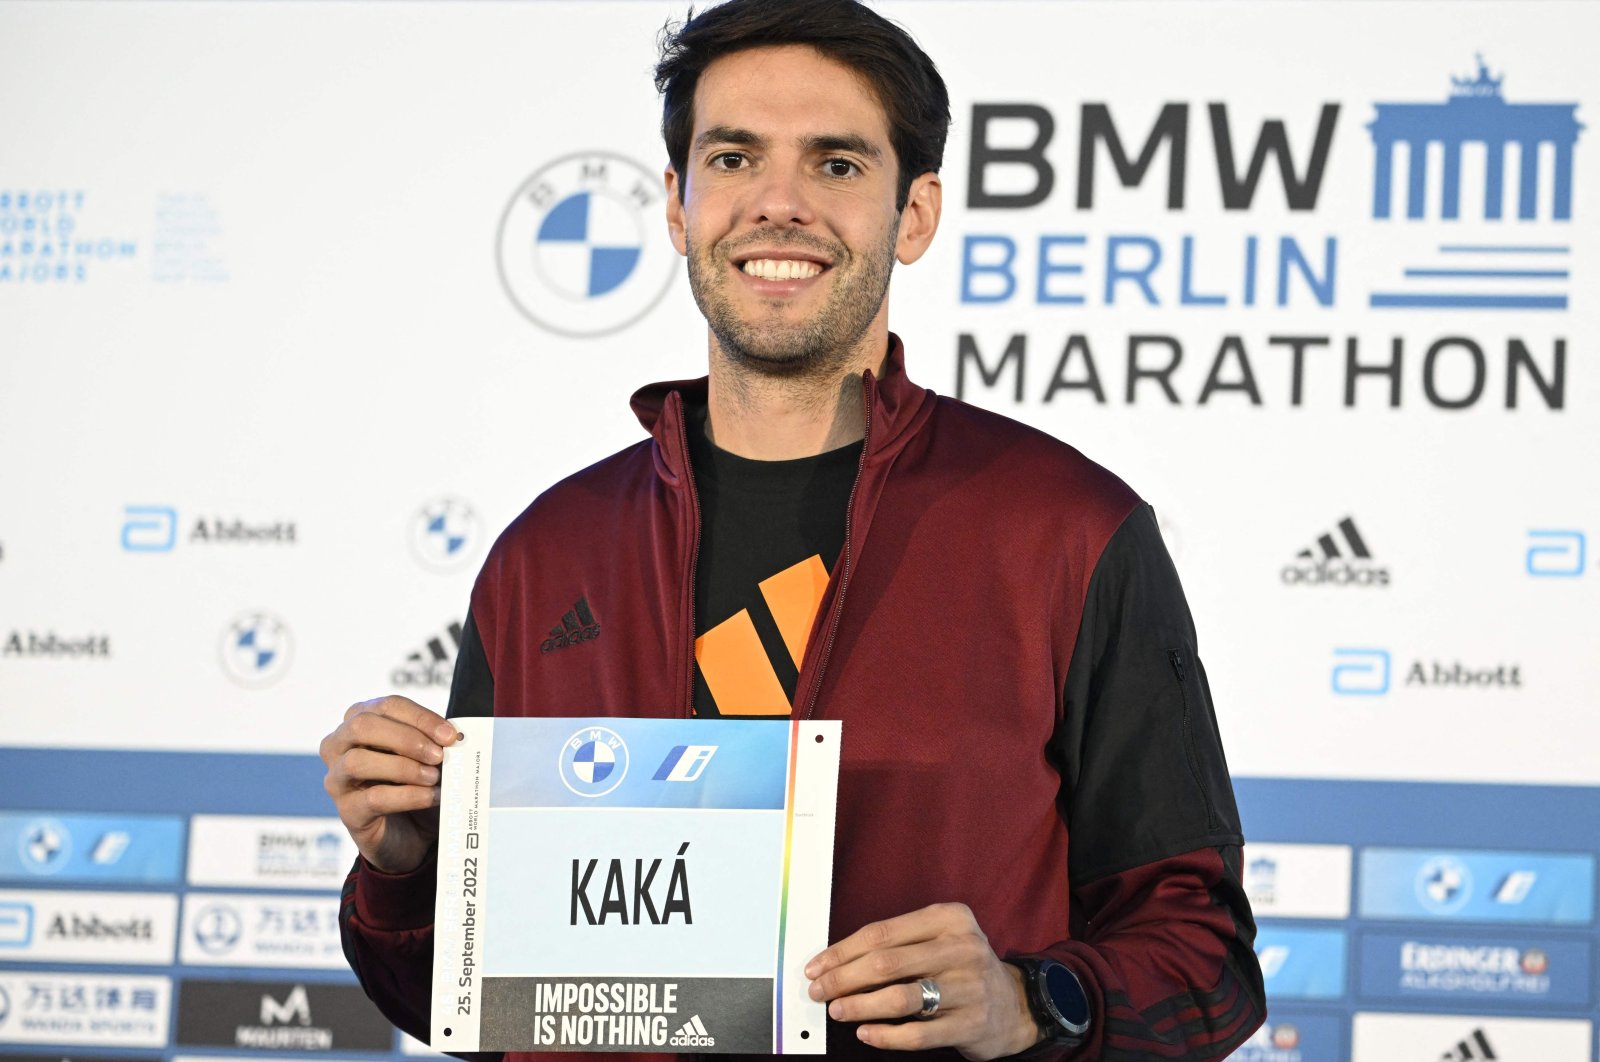 Mantan pesepakbola Brasil Kaka akan melakukan debut maraton di Berlin